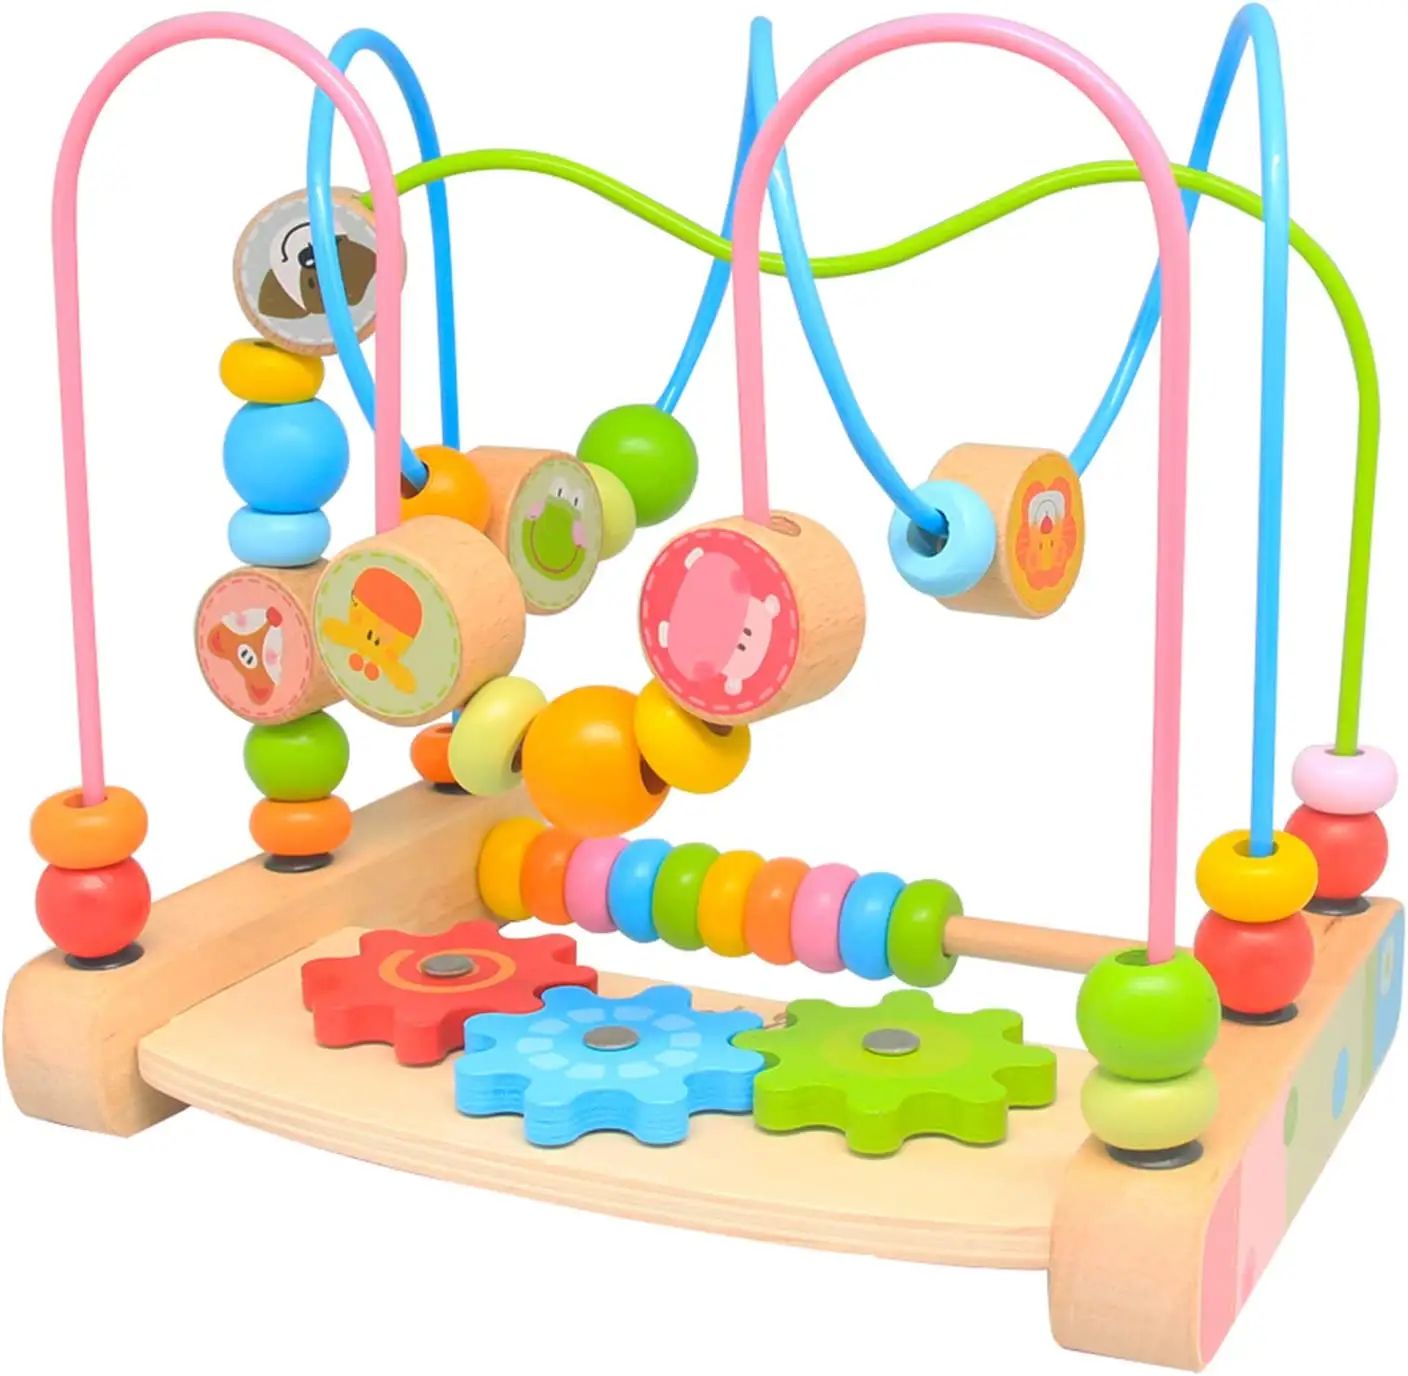 Bán Buôn Tùy Chỉnh Bé Bằng Gỗ Toddler Đầu Đồ Chơi Giáo Dục Vòng Tròn Đầu Tiên Bead Coaster Mê Cung Bằng Gỗ Bead Mê Cung Cho Trẻ Mới Biết Đi